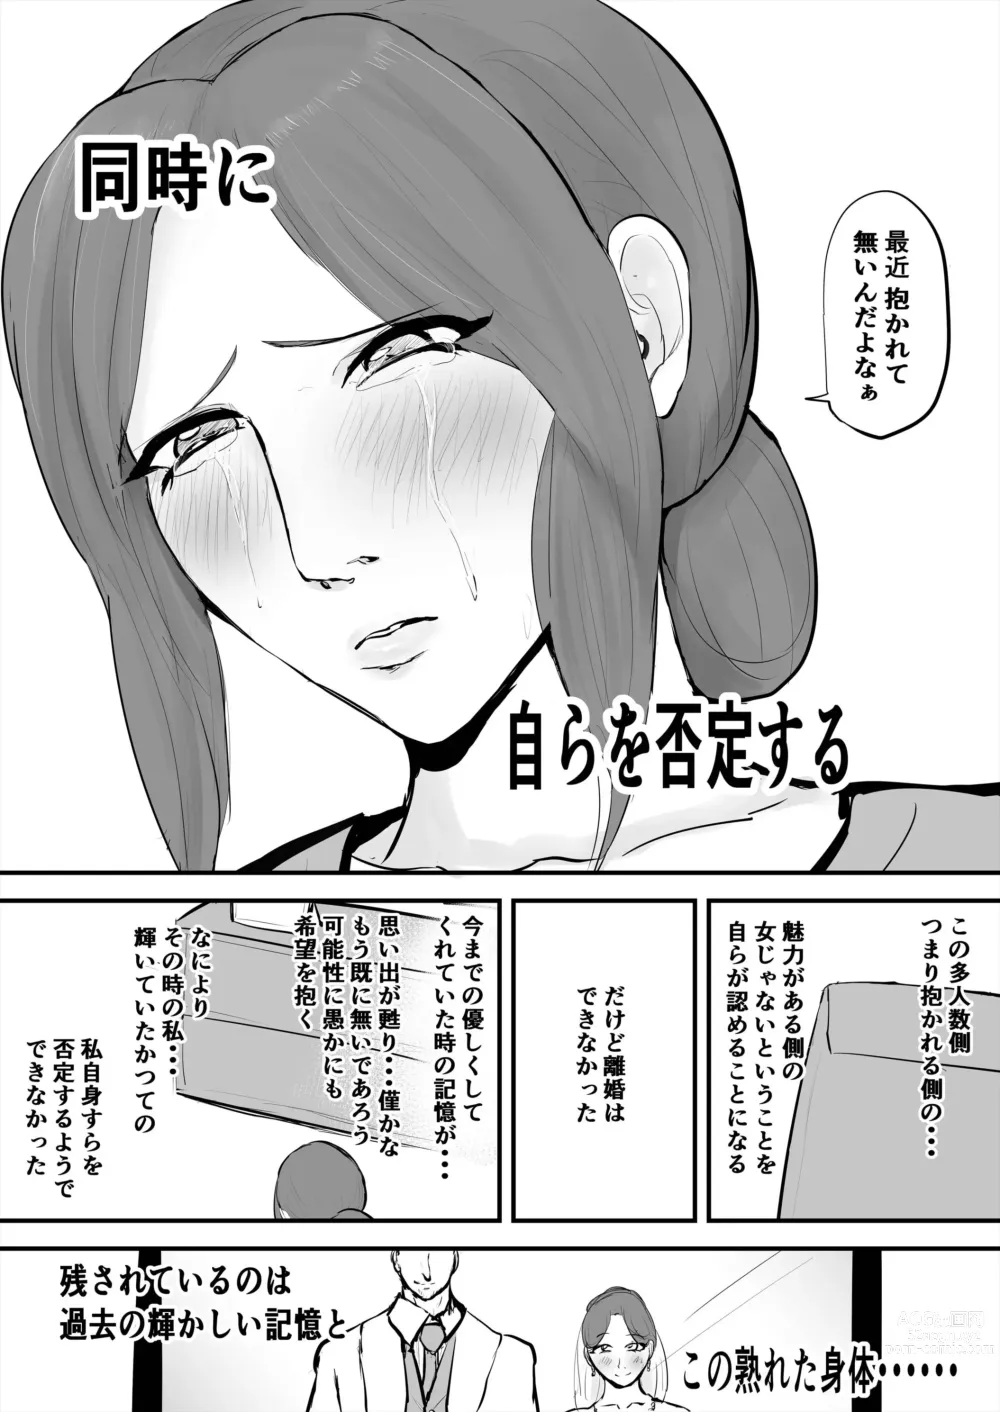 Page 5 of doujinshi Anata Ja Ikenaino Unubore Shufu Hen